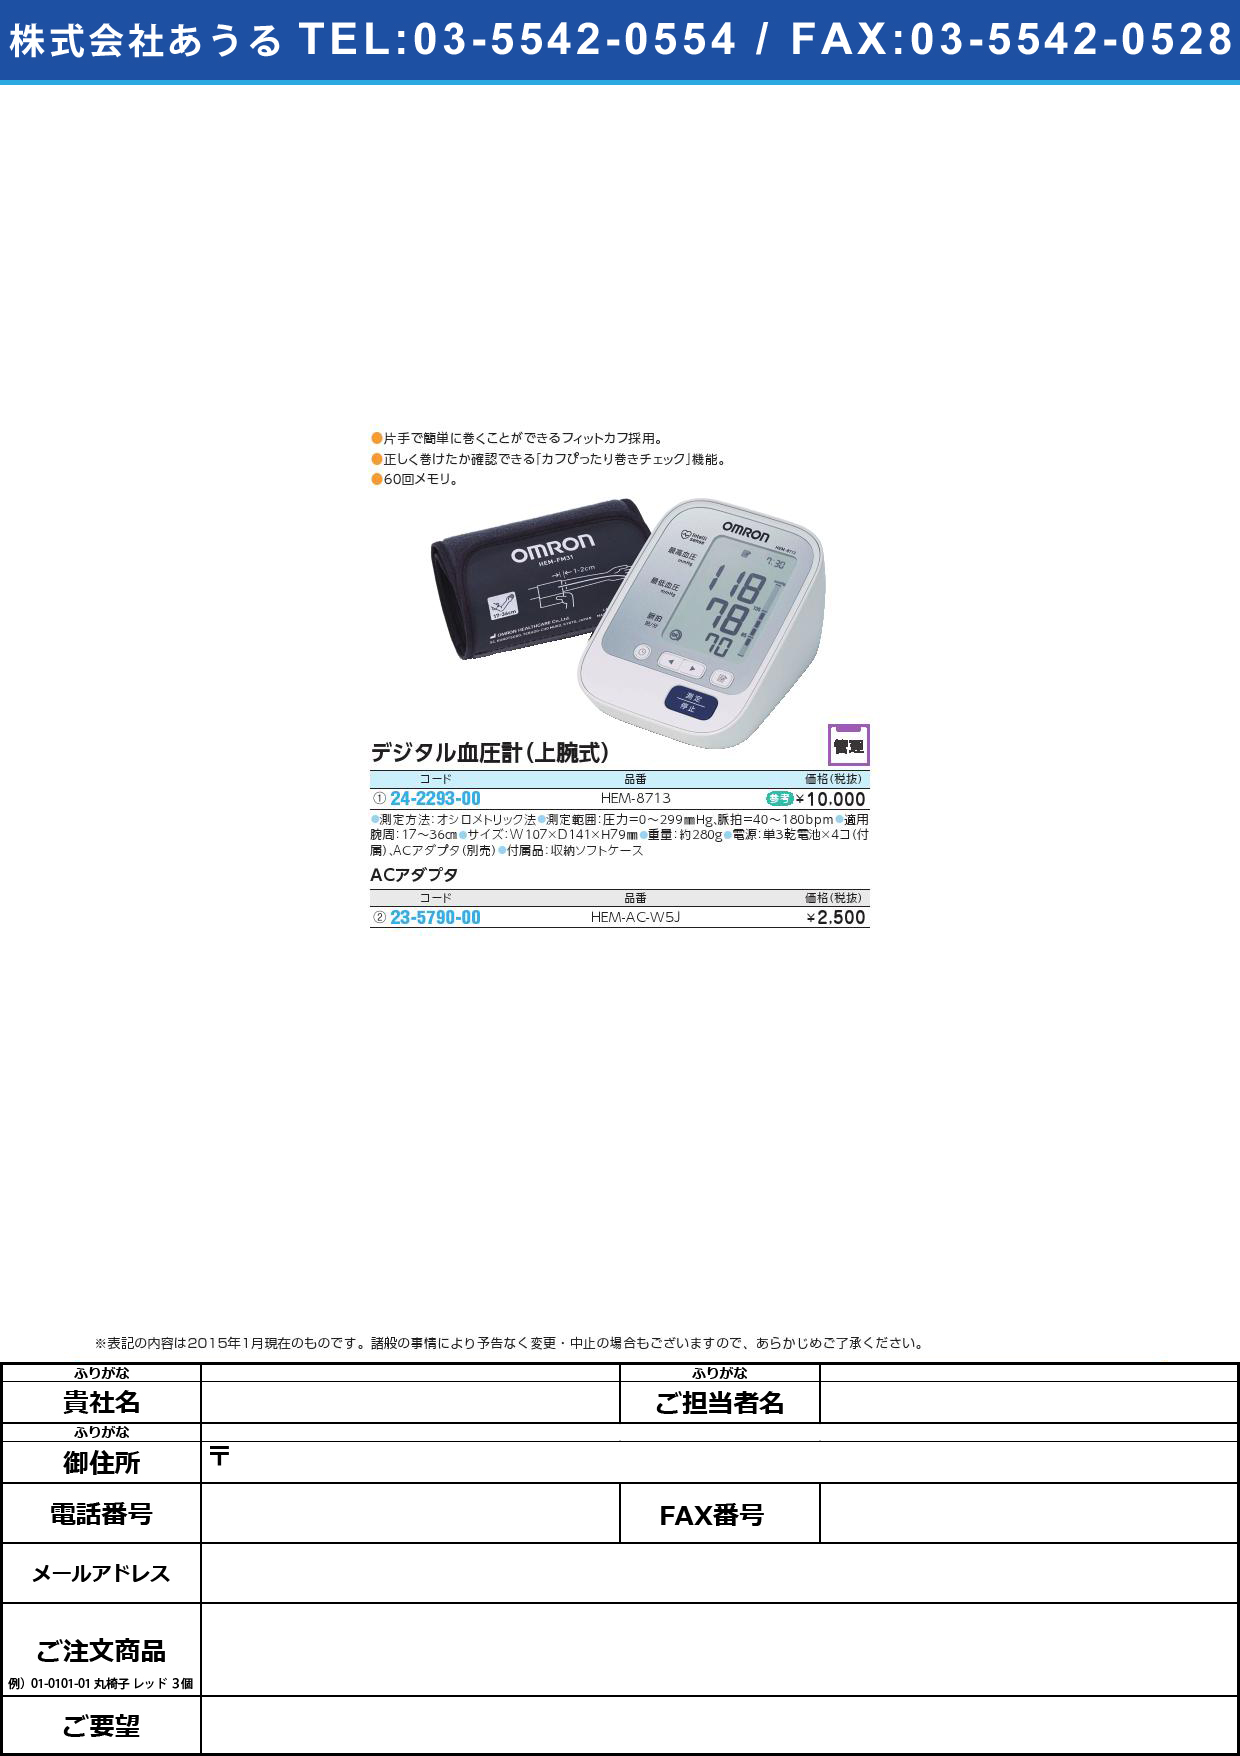 (24-2293-00)デジタル自動血圧計（上腕式） ﾃﾞｼﾞﾀﾙｼﾞﾄﾞｳｹﾂｱﾂｹｲ(24-2293-00)HEM-8713【1台単位】【2015年カタログ商品】